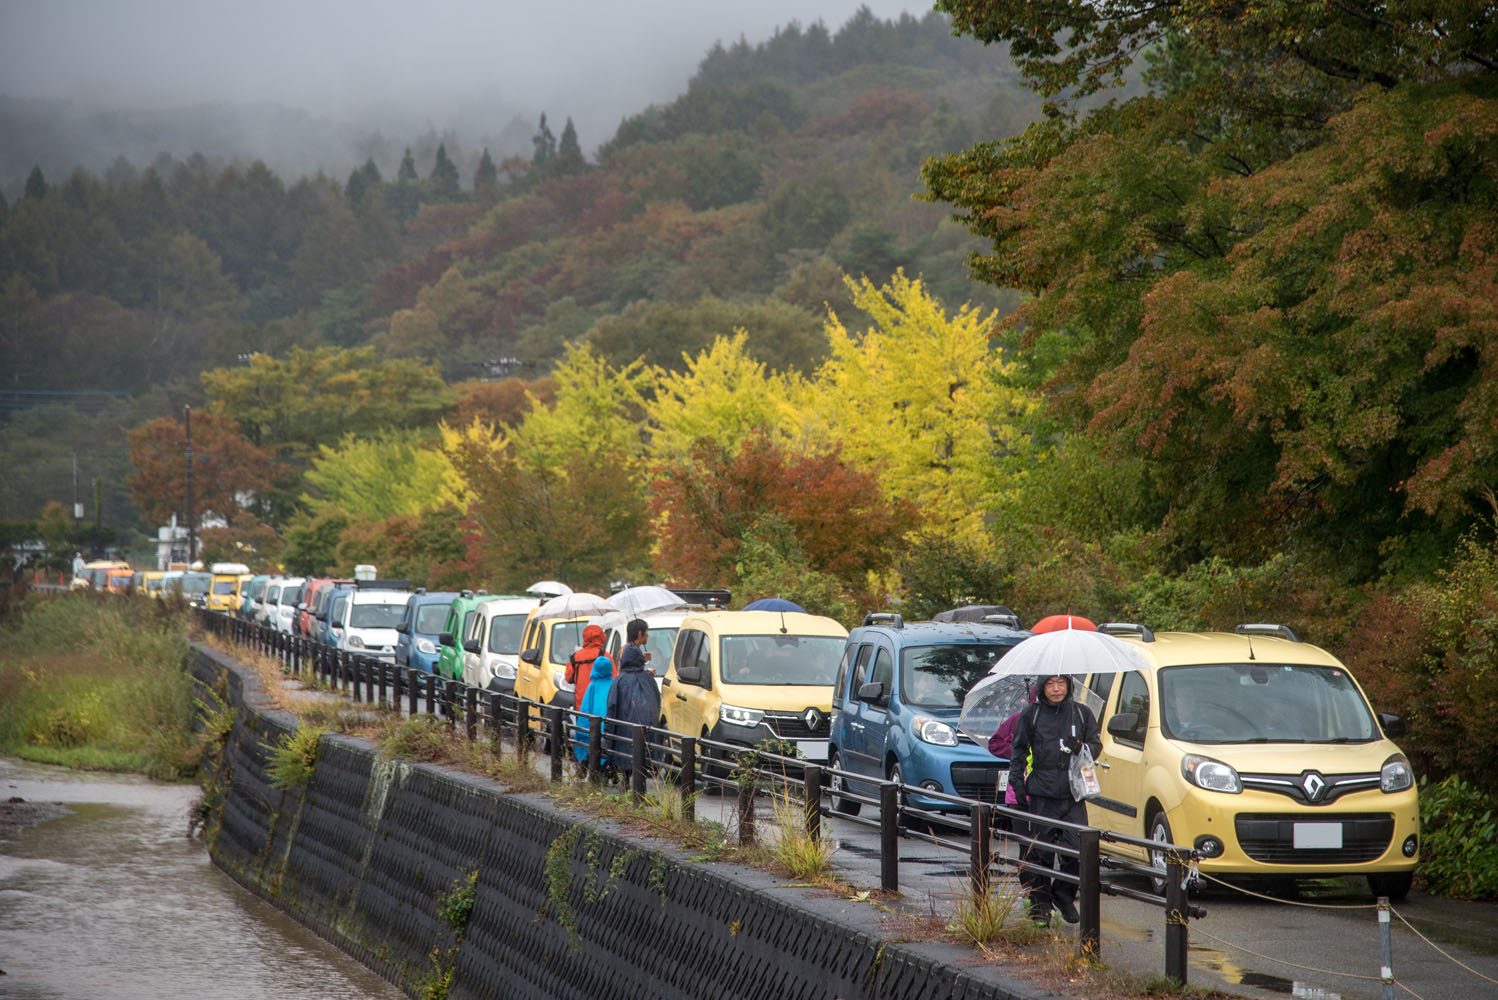 ルノー新型「グラン カングー」の3列シート仕様が日本に正規導入決定！ 1500台が集まった「カングージャンボリー」に仏本社が注目する理由とは